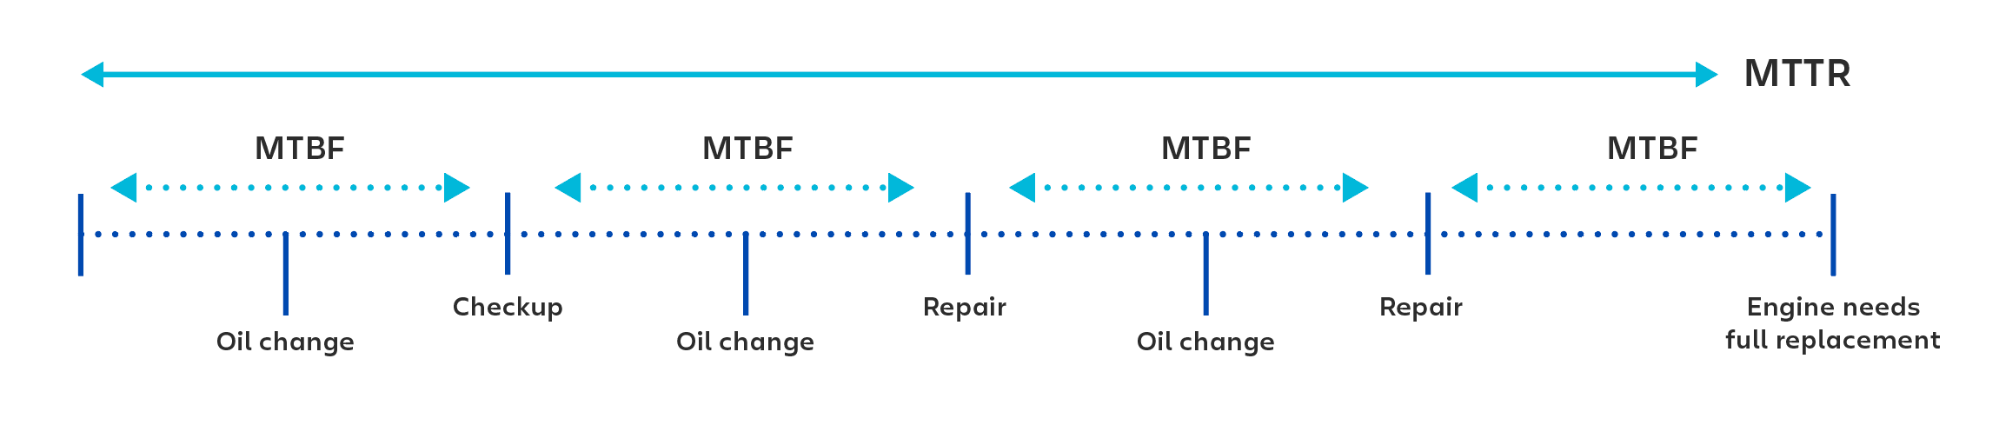 Esempio visivo di utilizzo dell'MTBF (tempo medio tra guasti) per il calcolo del tempo tra ogni controllo o riparazione.